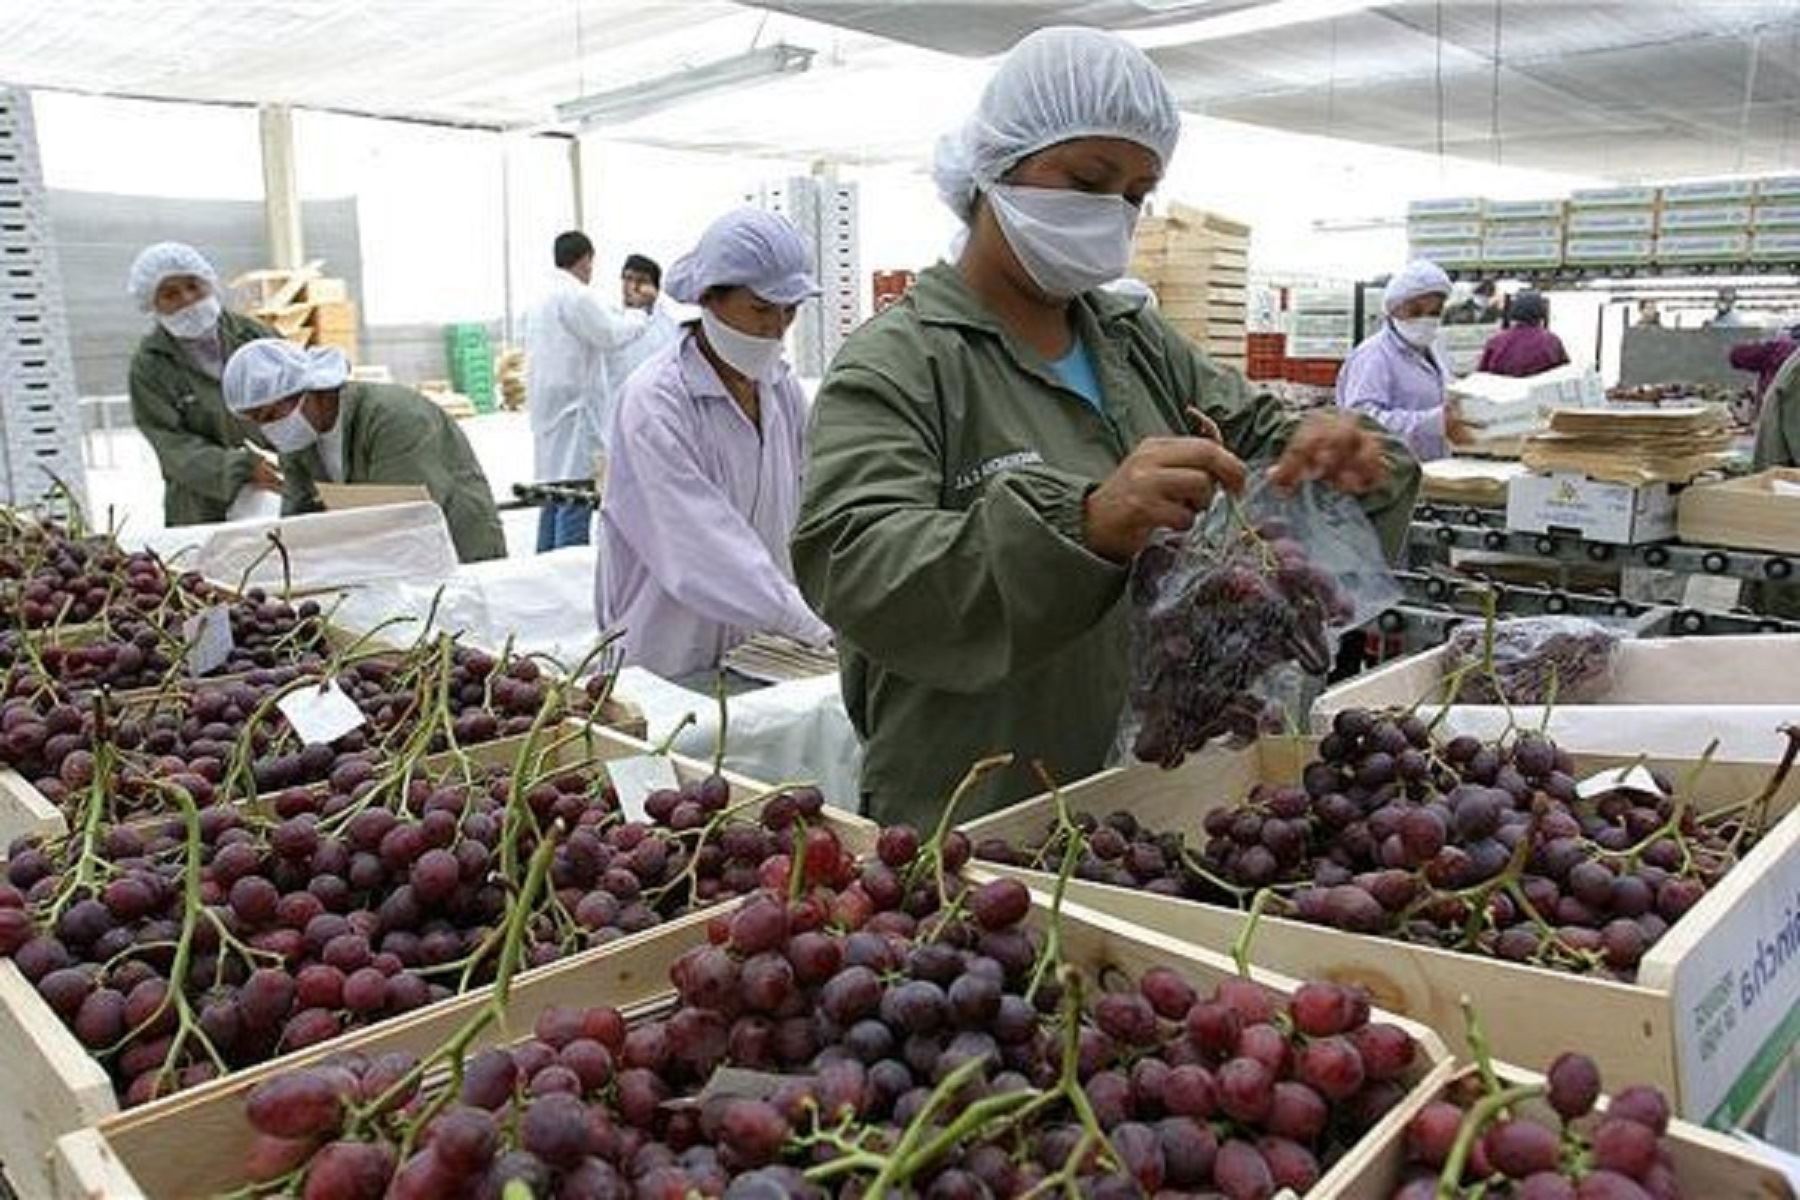 La agroexportación es una actividad descentralizada. En la imagen se aprecia el proceso de empaque de uvas para enviar a los mercados internacionales. ANDINA/Difusión